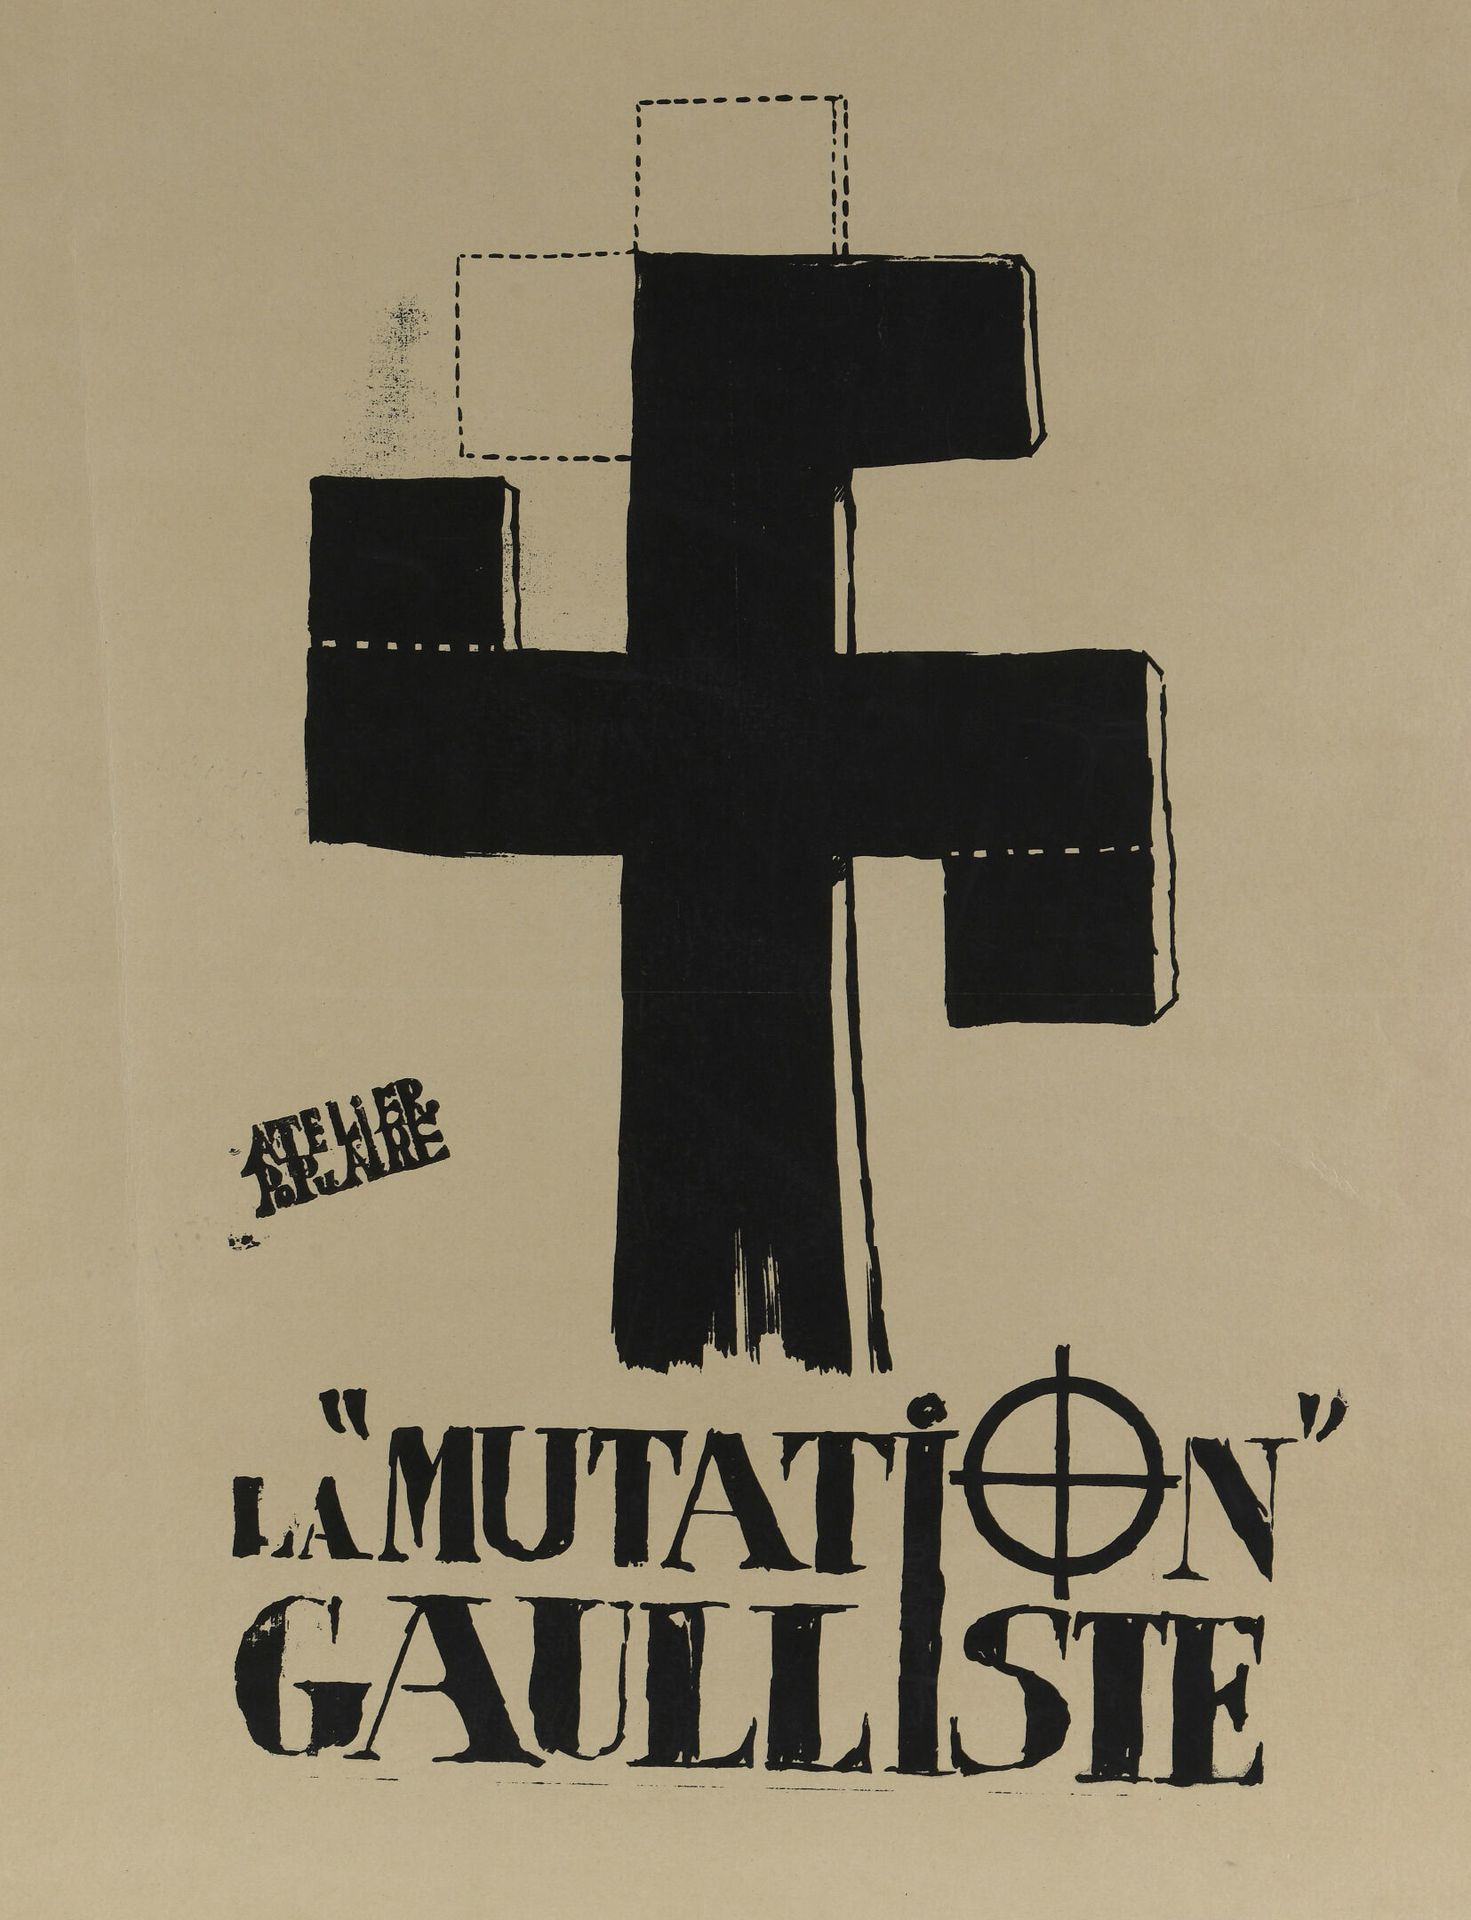 Null [Affiche de mai 1968]

Atelier Populaire

La mutation gaulliste

Sérigraphi&hellip;